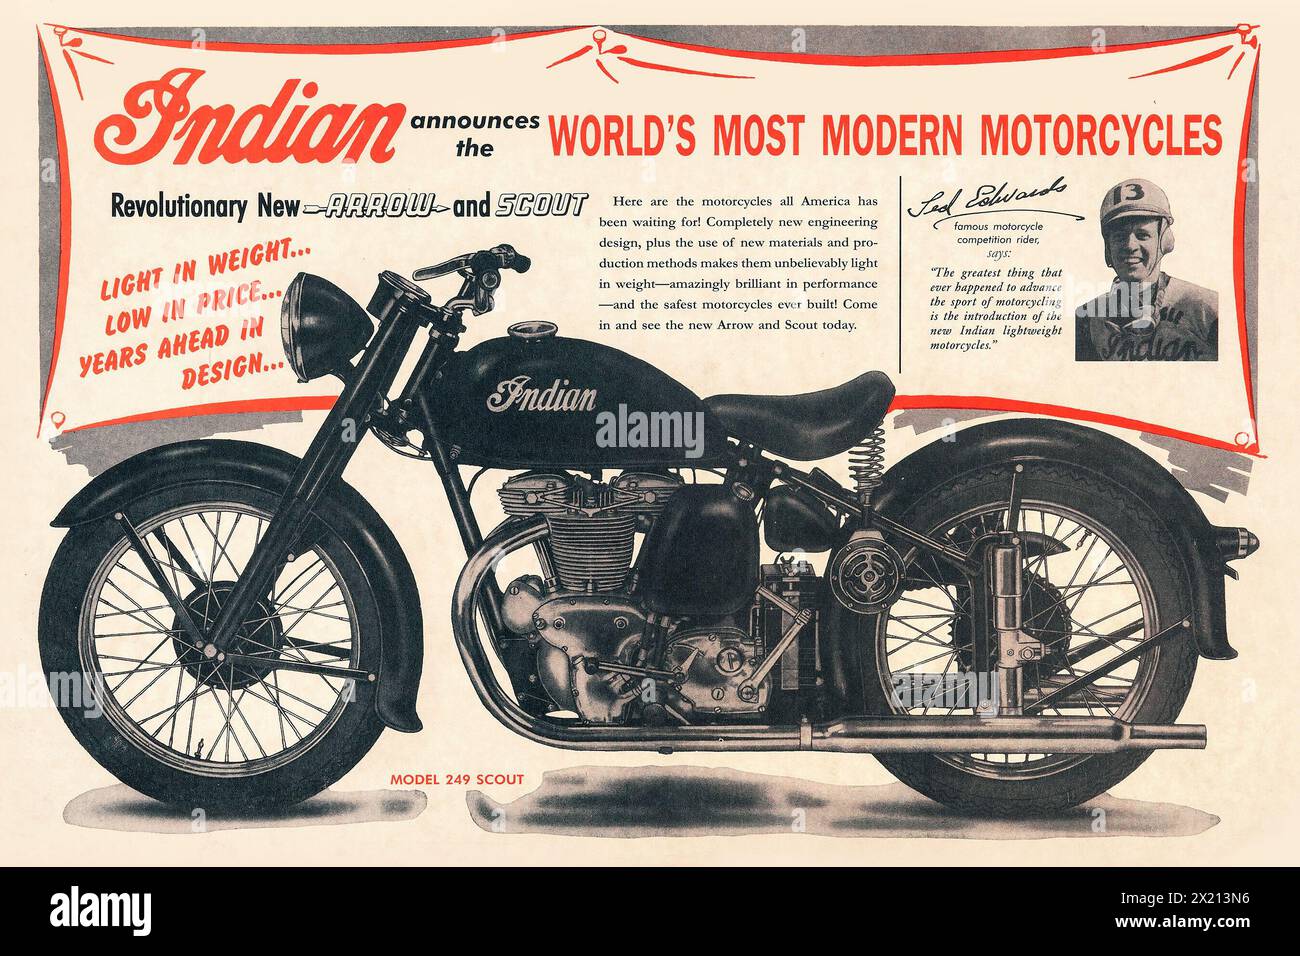 Motos indiennes - les motos les plus modernes du monde (Indian, 1948). Publicité de moteur vintage. Banque D'Images